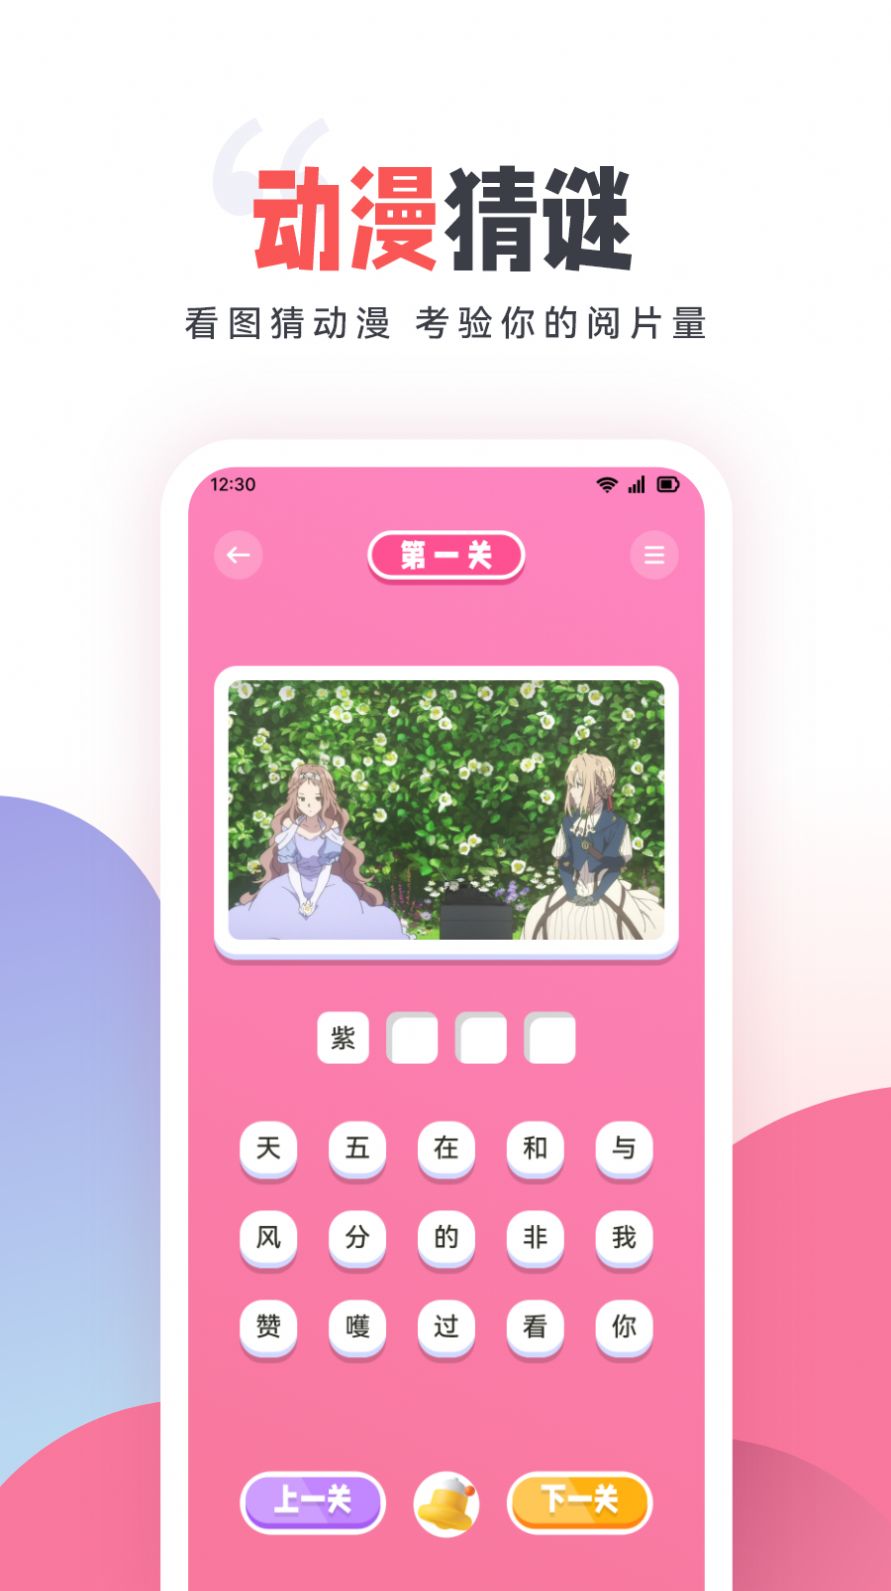 嘀嘀动漫盒子手机版app官方正版下载图片3